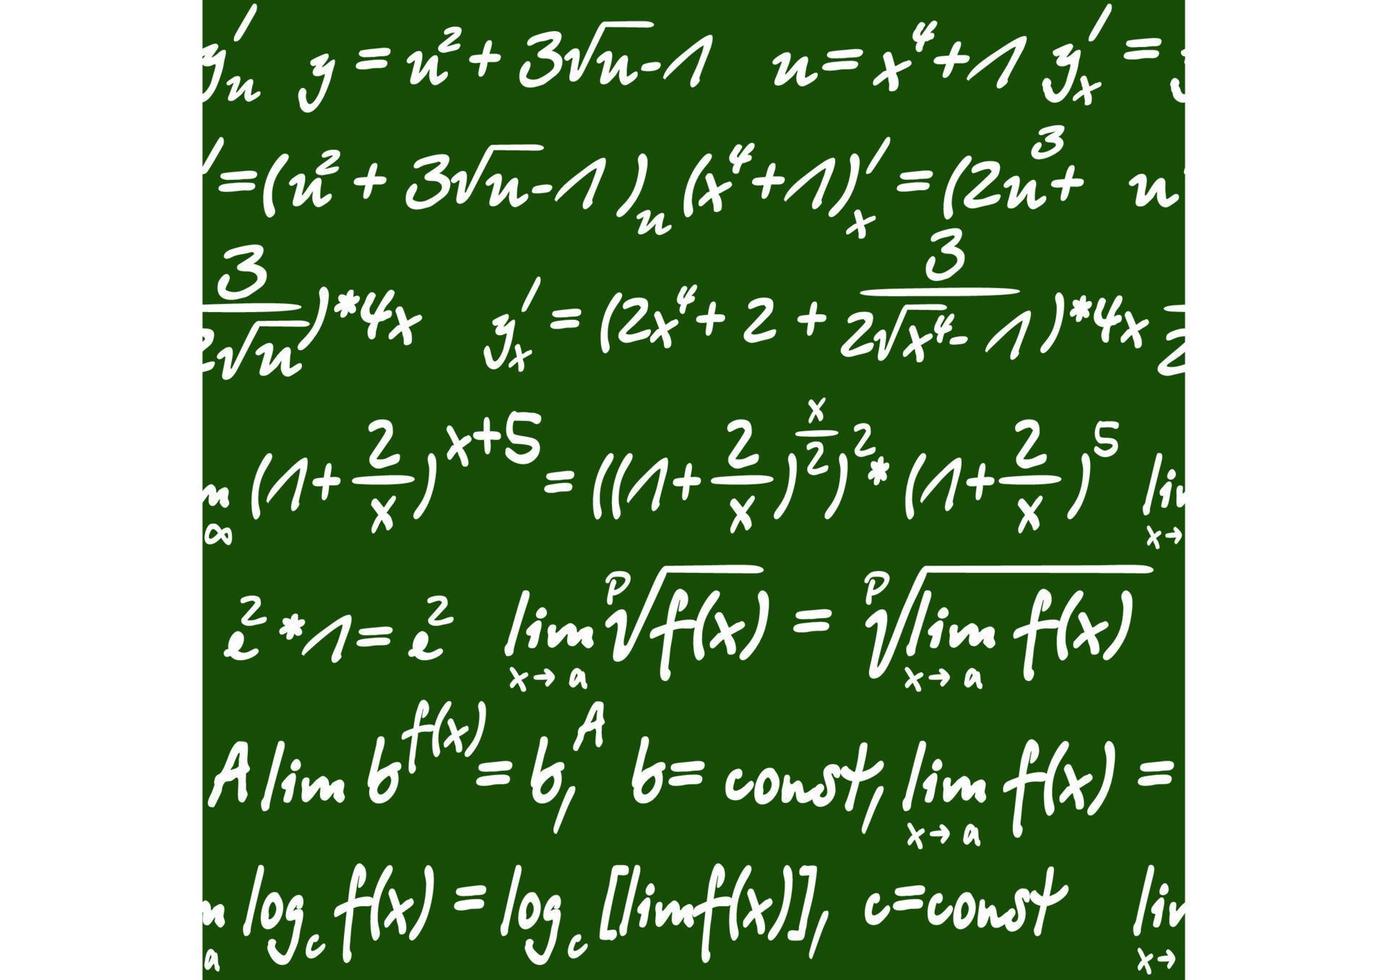 padrão perfeito de equações matemáticas vetor